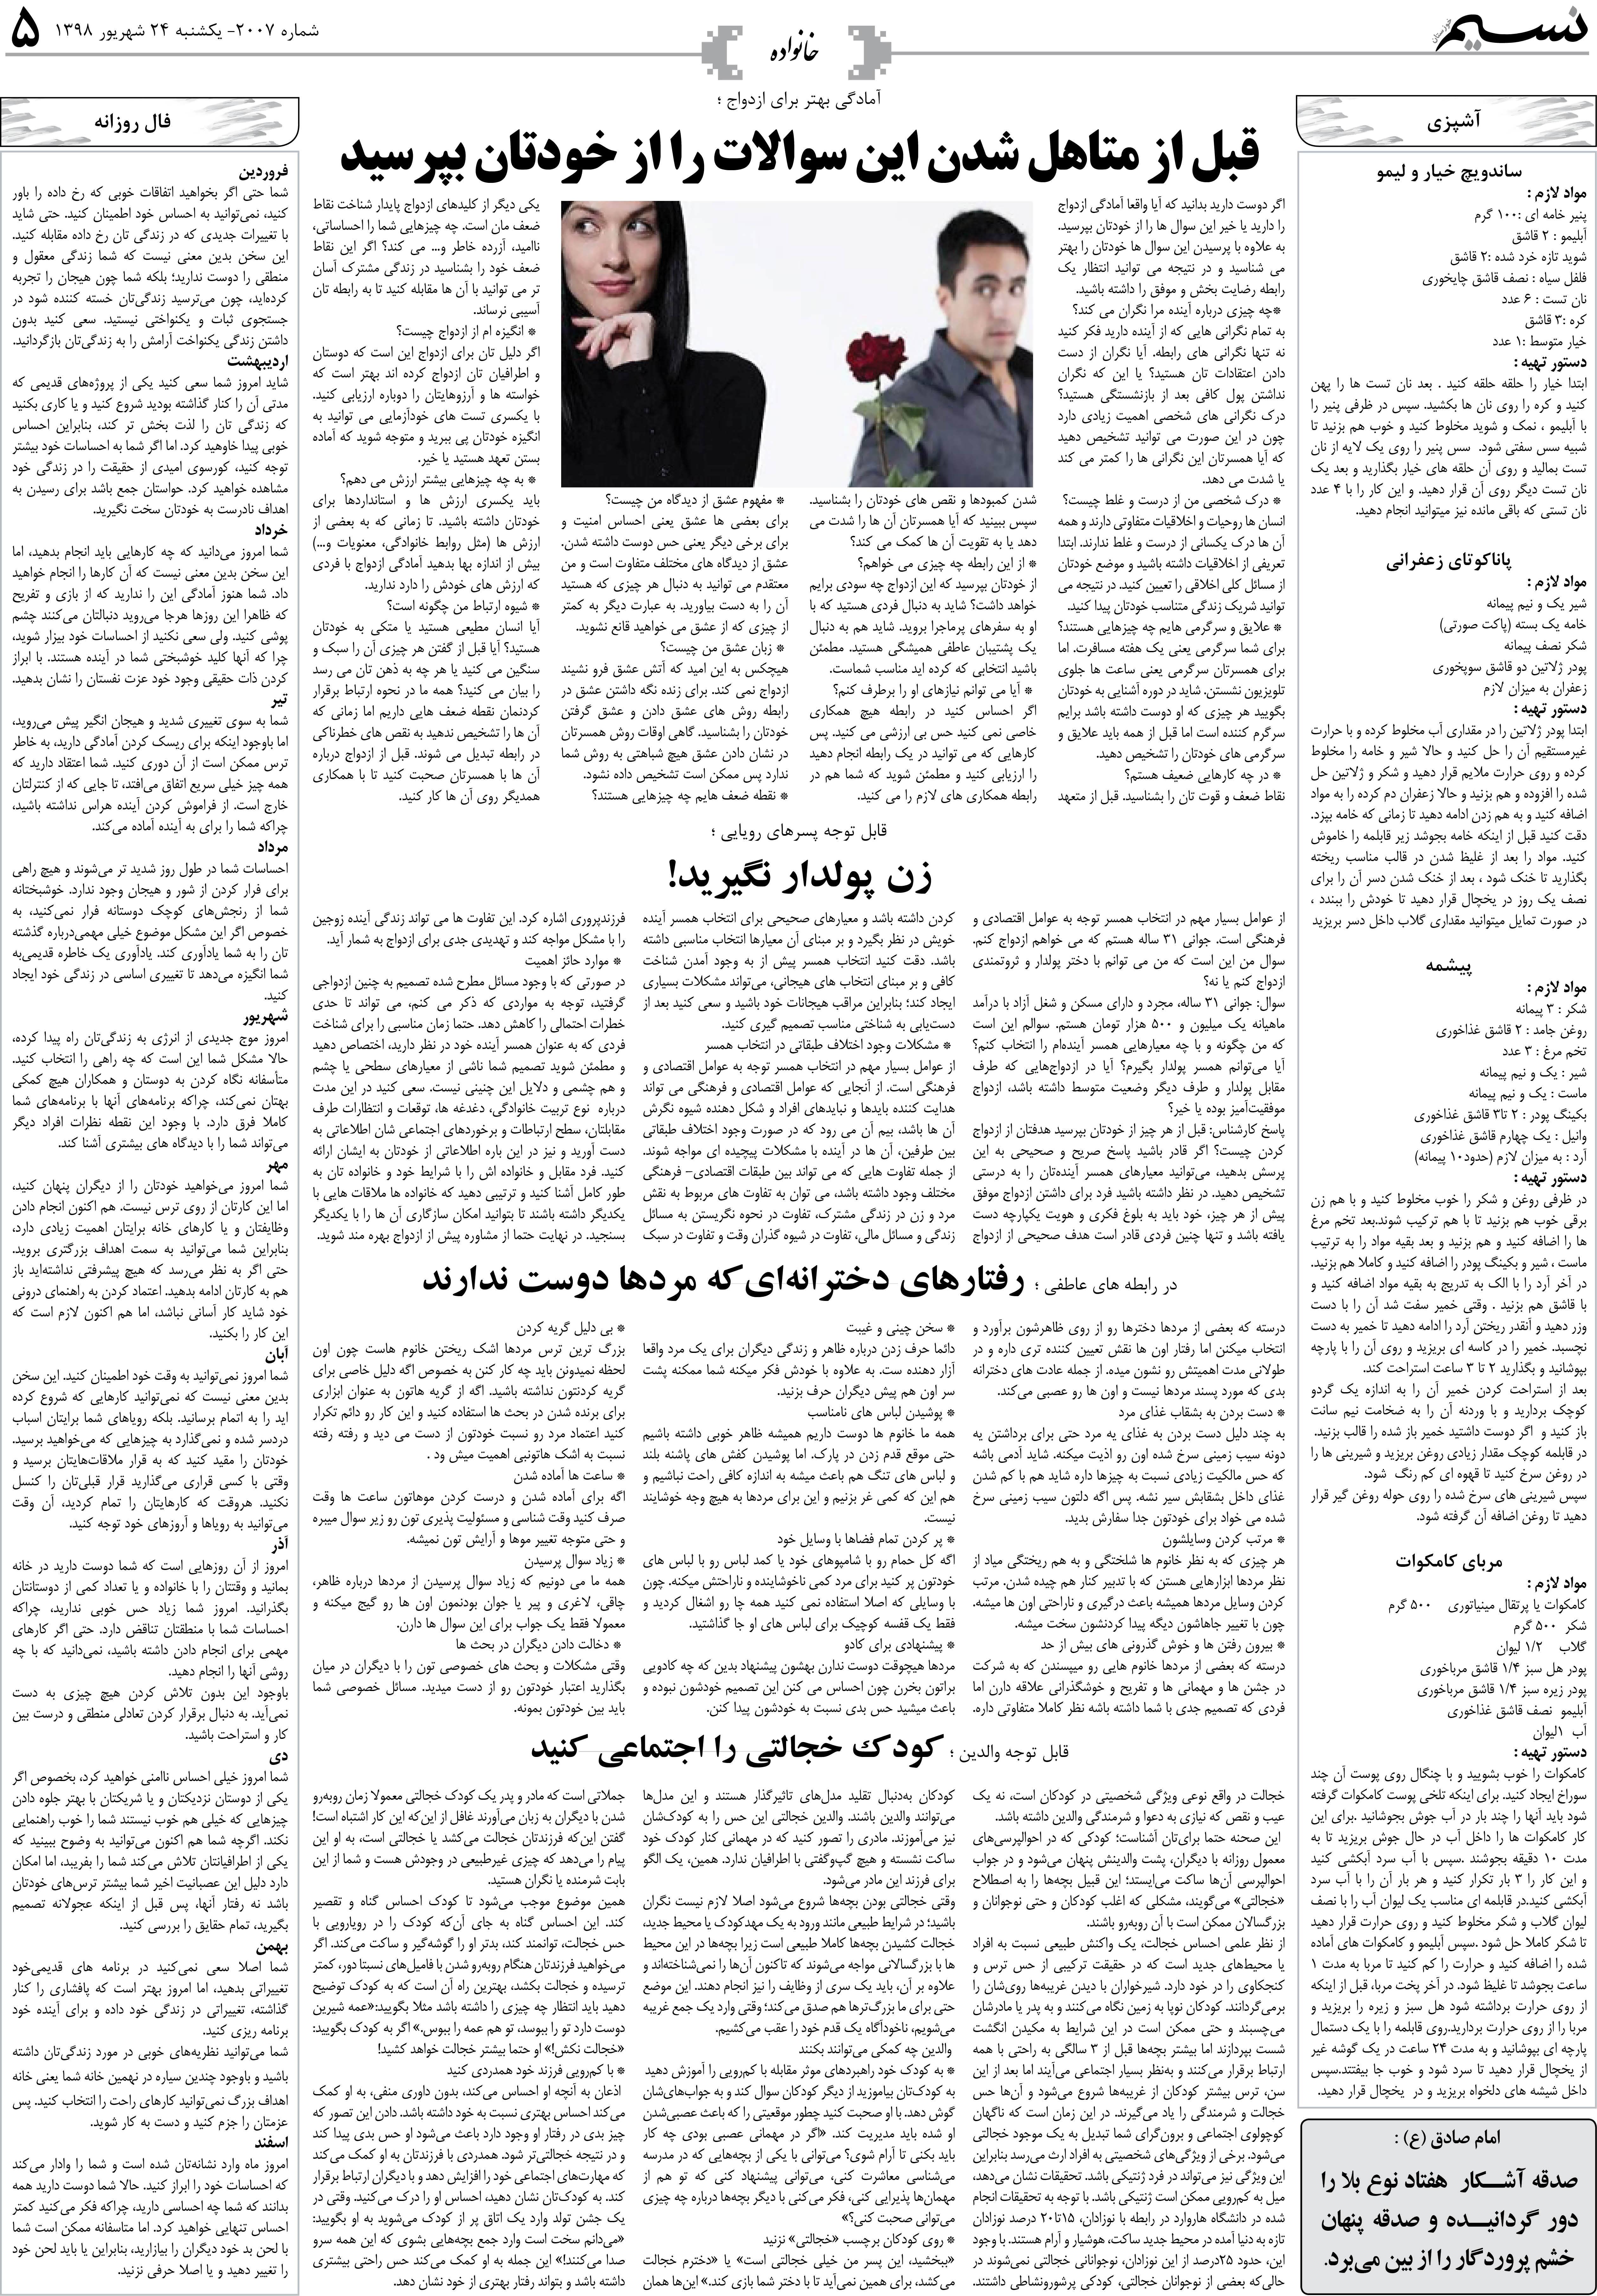 صفحه خانواده روزنامه نسیم شماره 2007